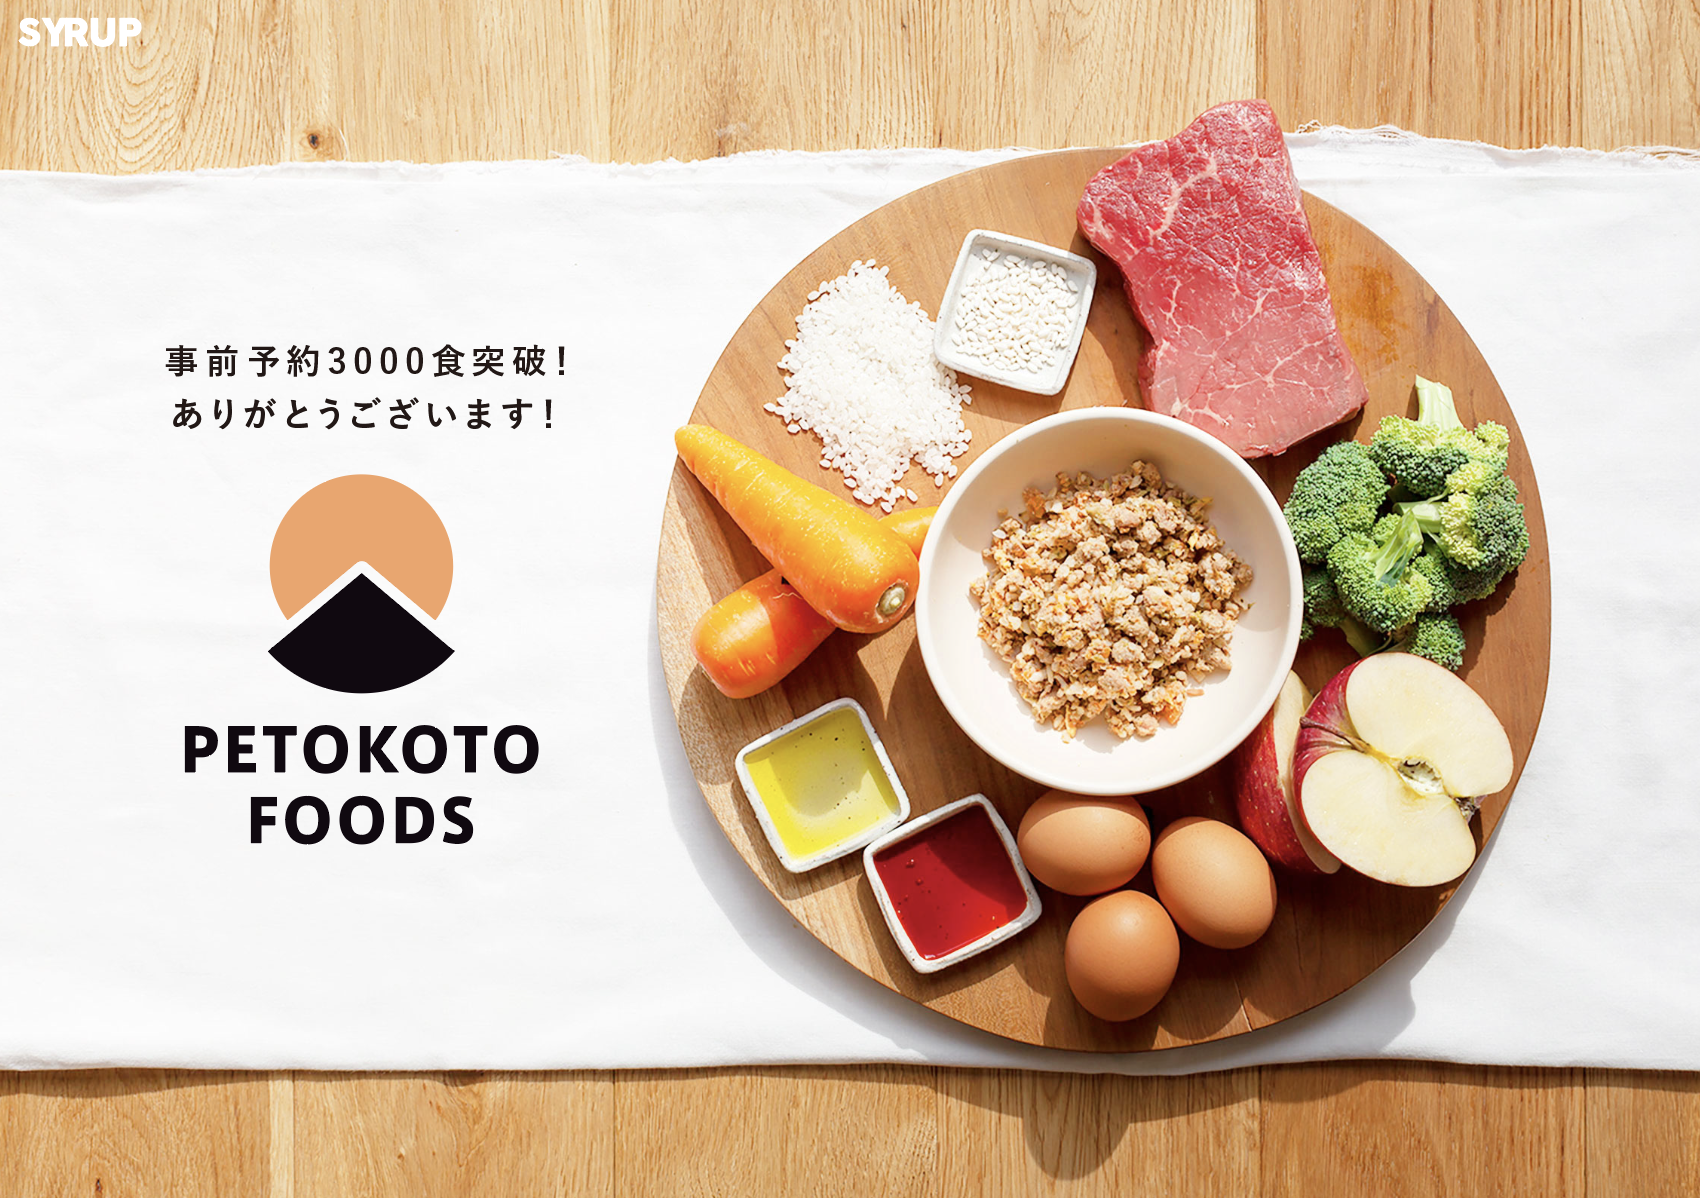 D2Cドッグフード「PETOKOTO FOODS」、リリース初日で事前予約3000食を突破｜PETOKOTO（ペトコト）のプレスリリース